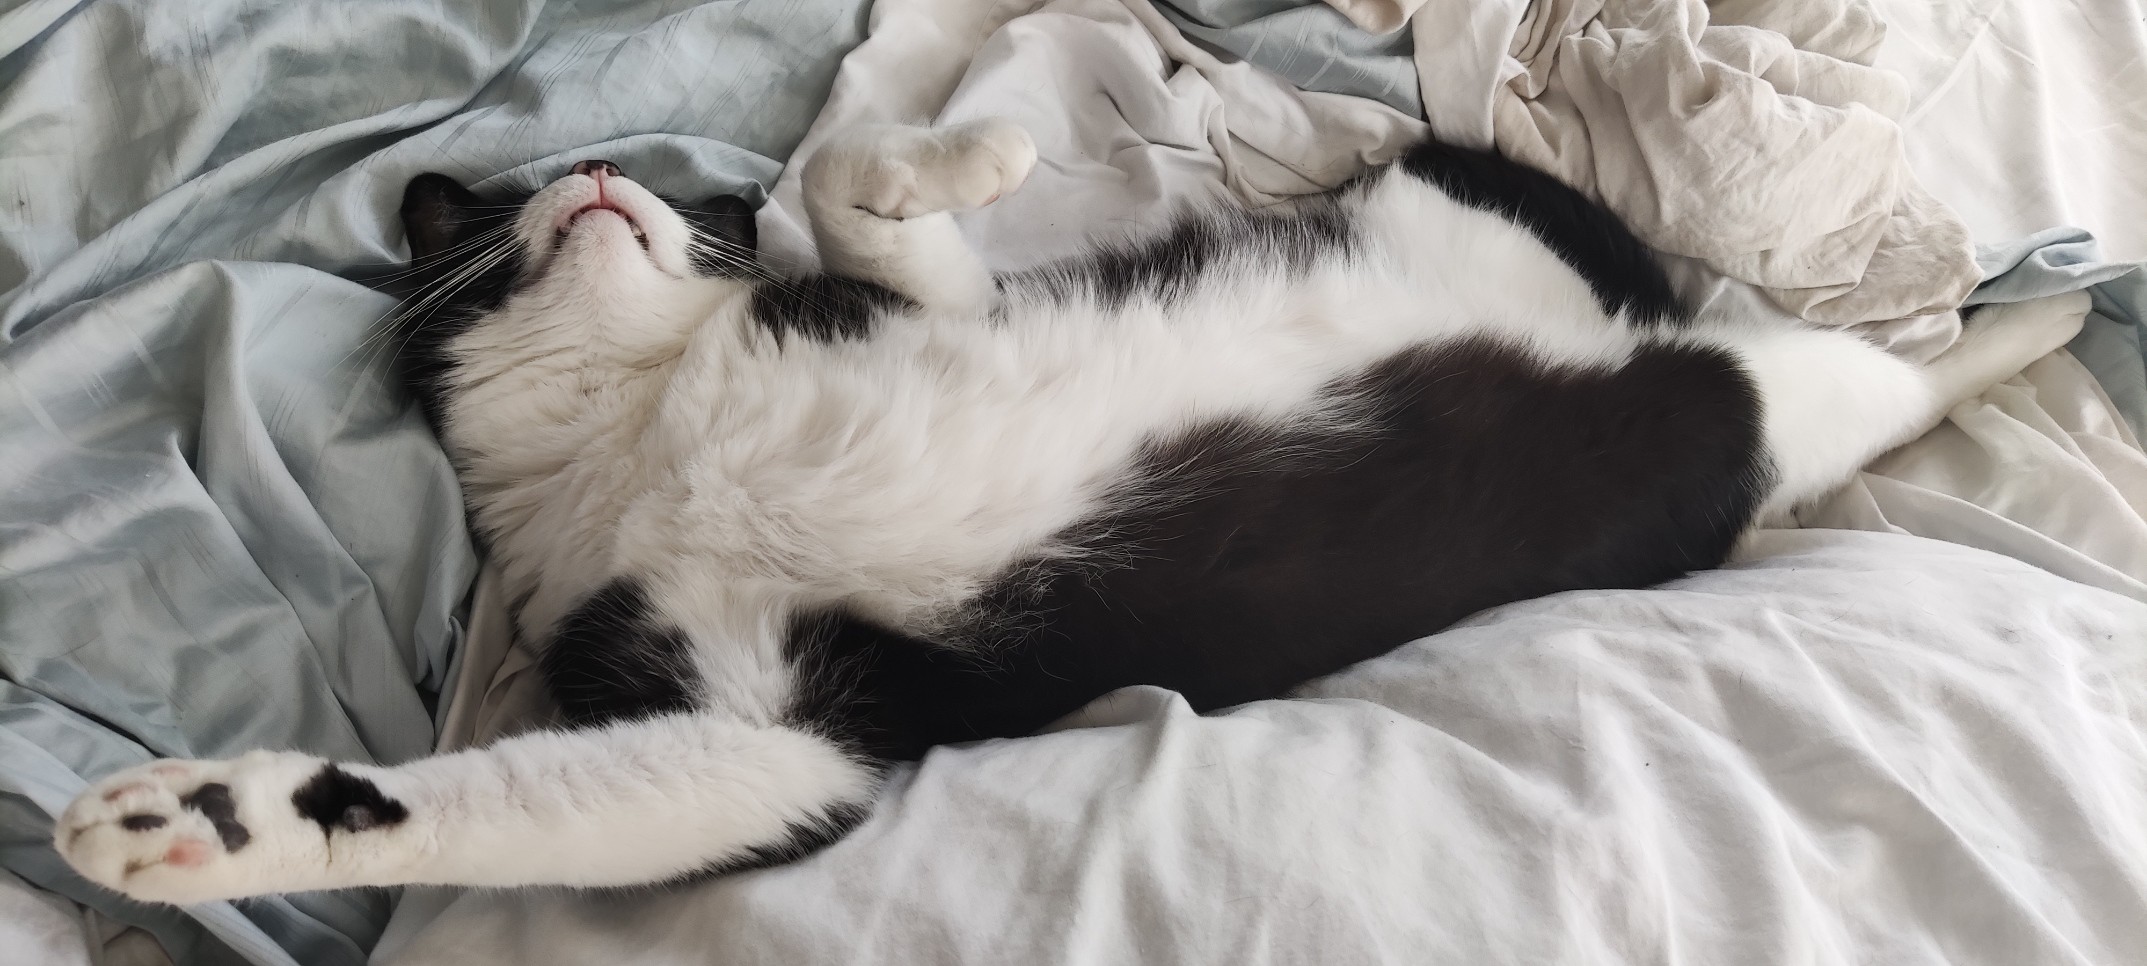 Eine faule Tuxedo-Katze chillt auf einem unordentlich Bett.